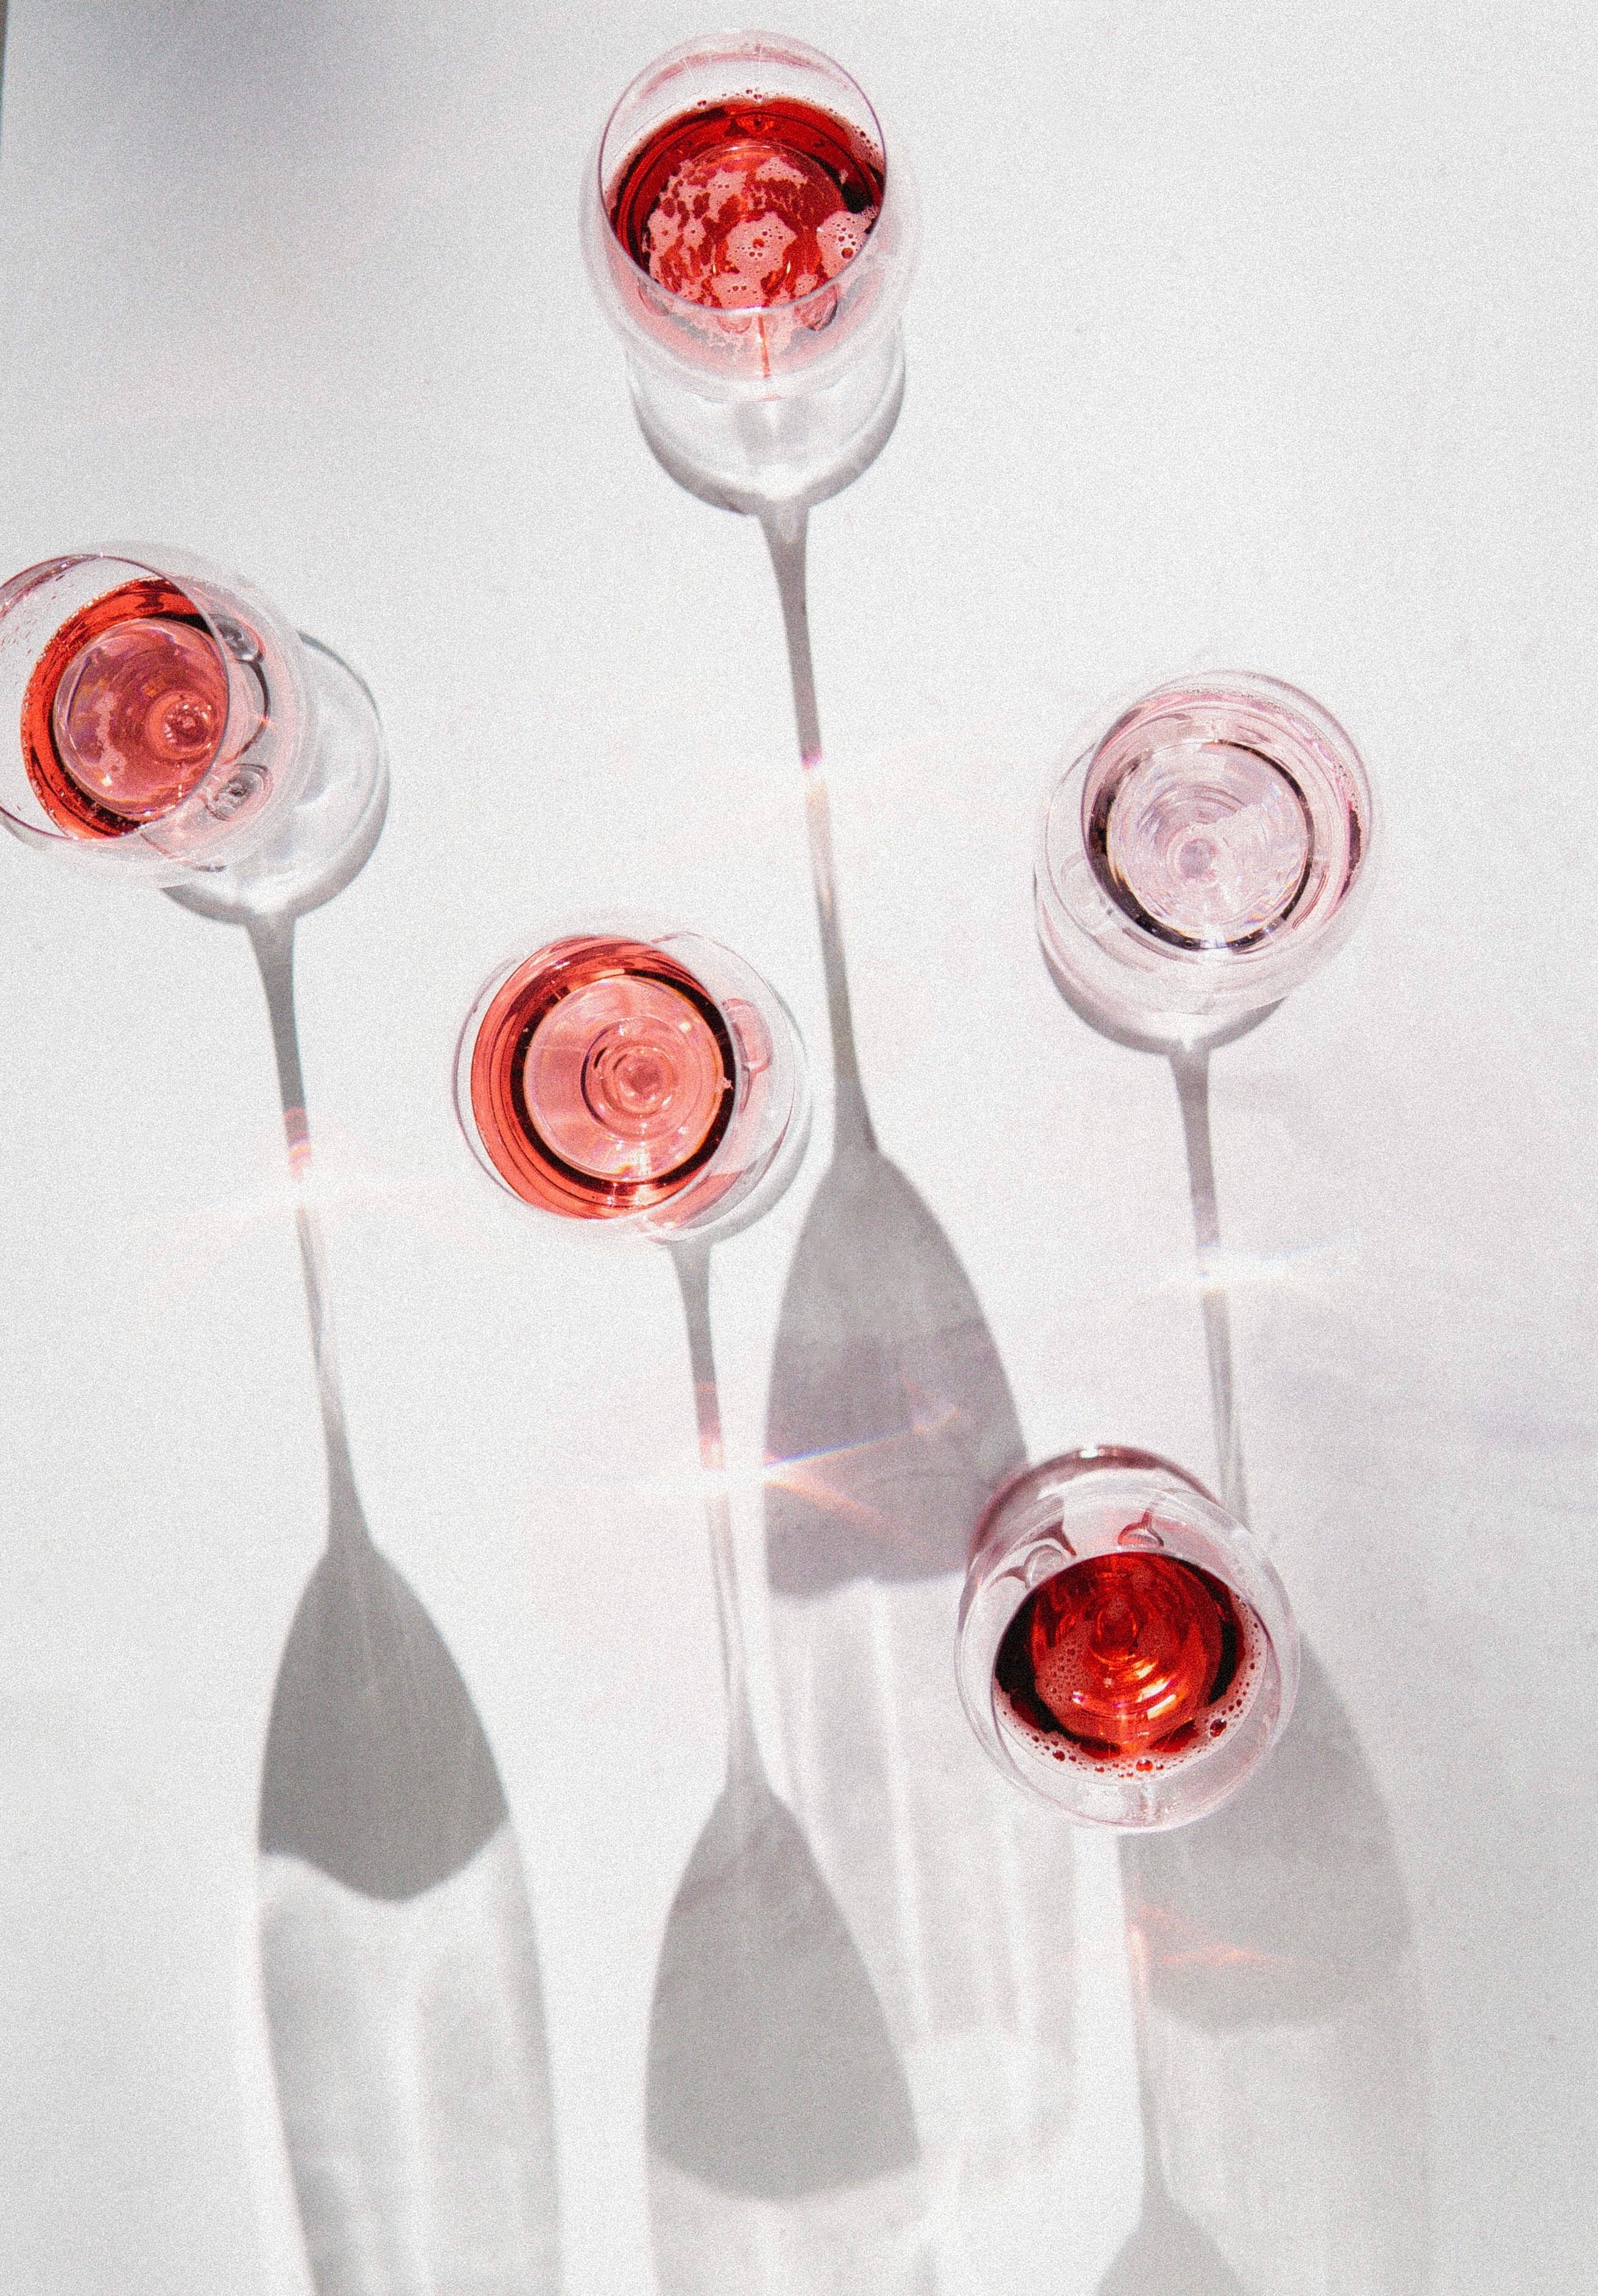 Bicchieri da vino: i migliori modelli di design